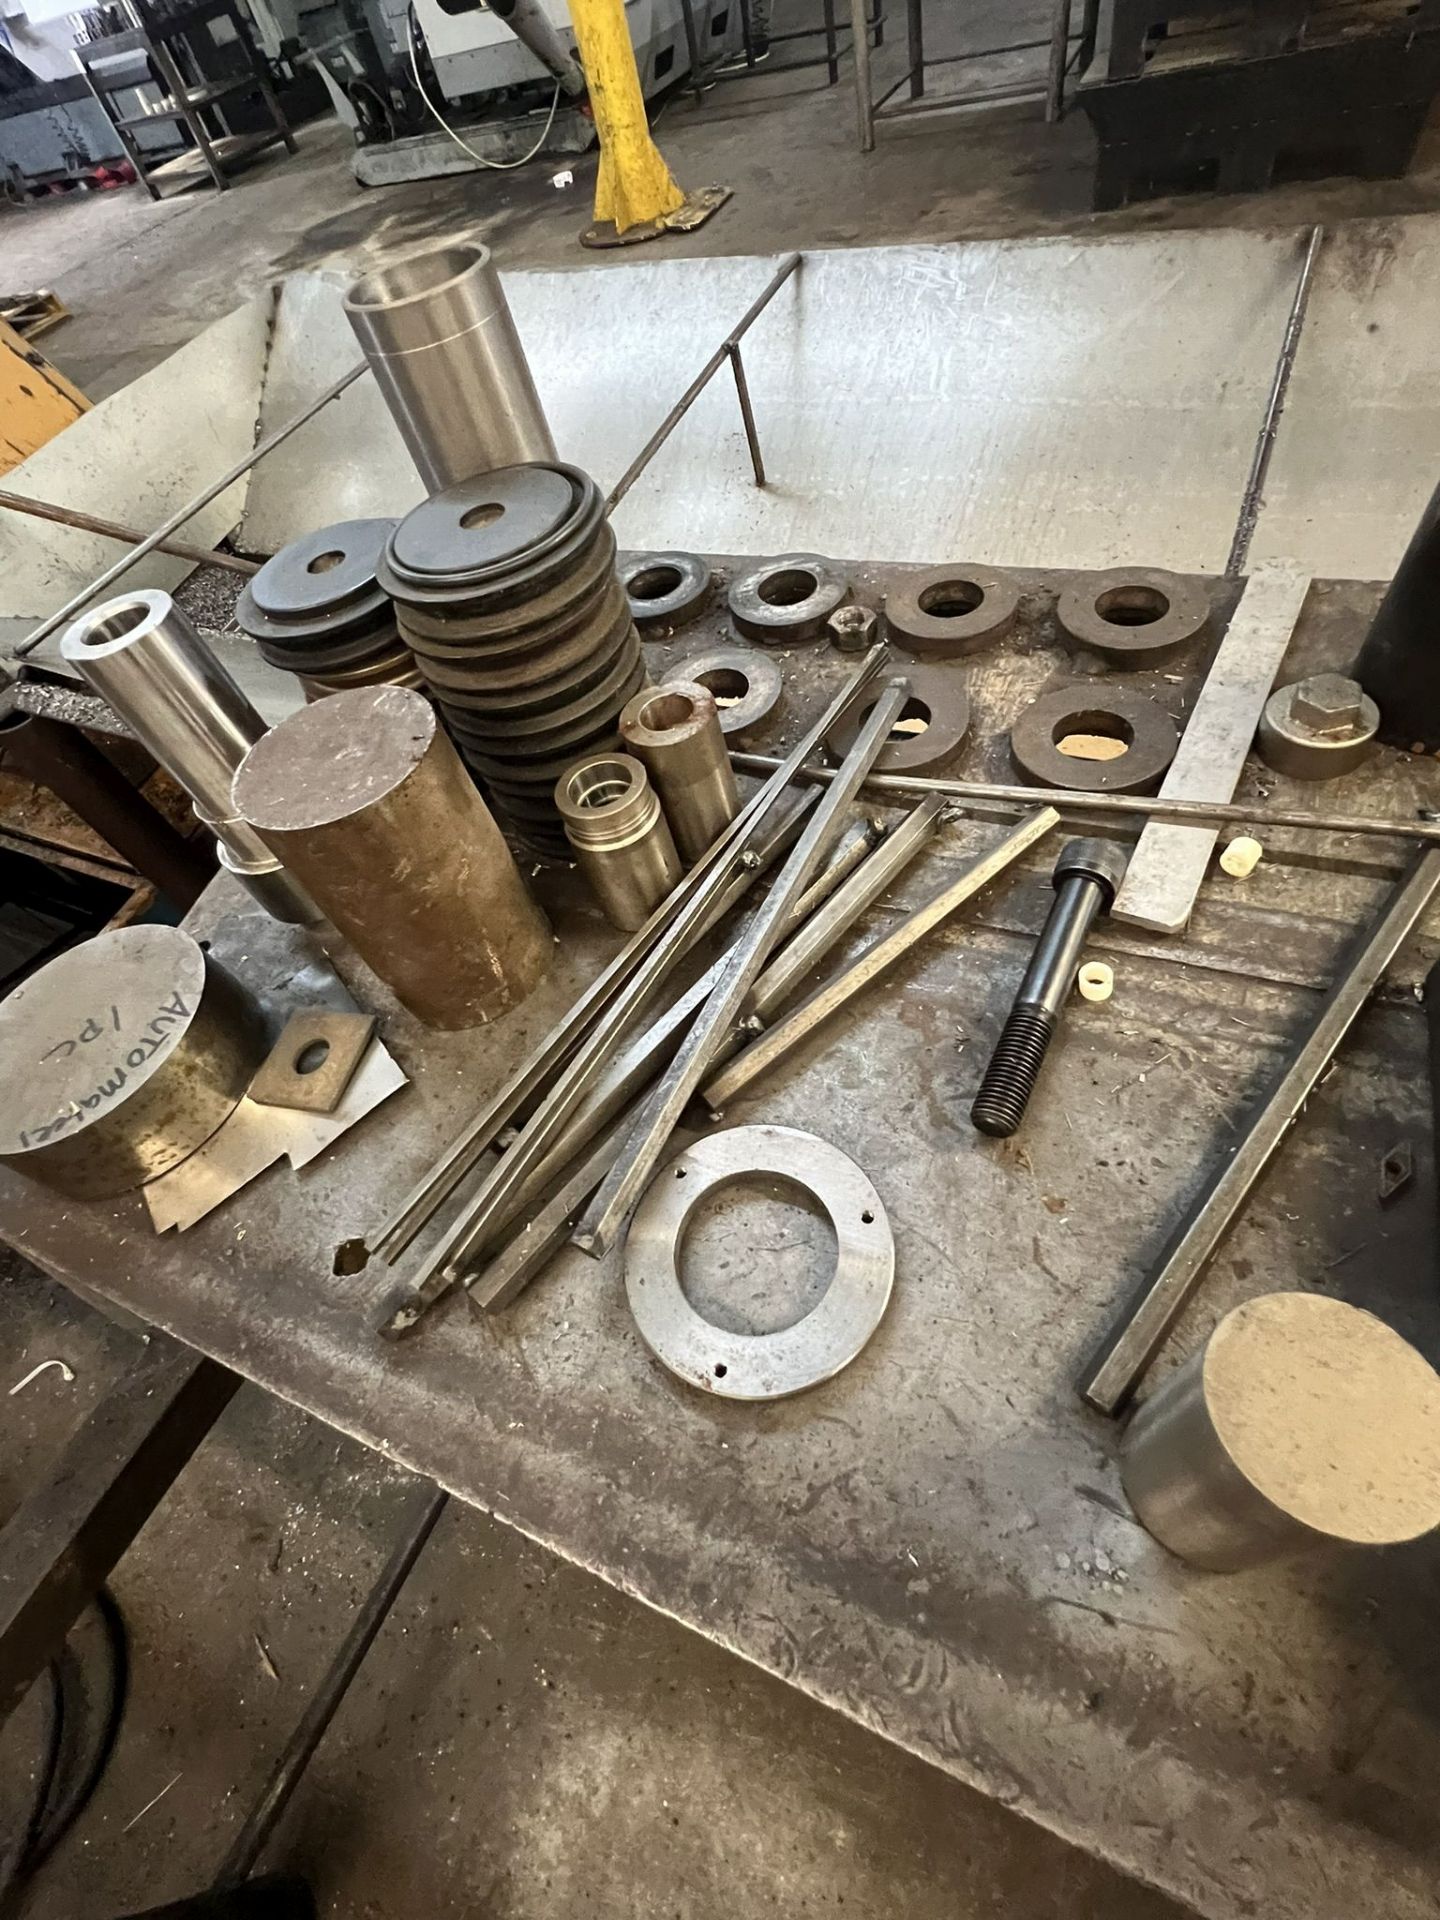 Metal Work Bench & Contents of Tooling - Bild 4 aus 5